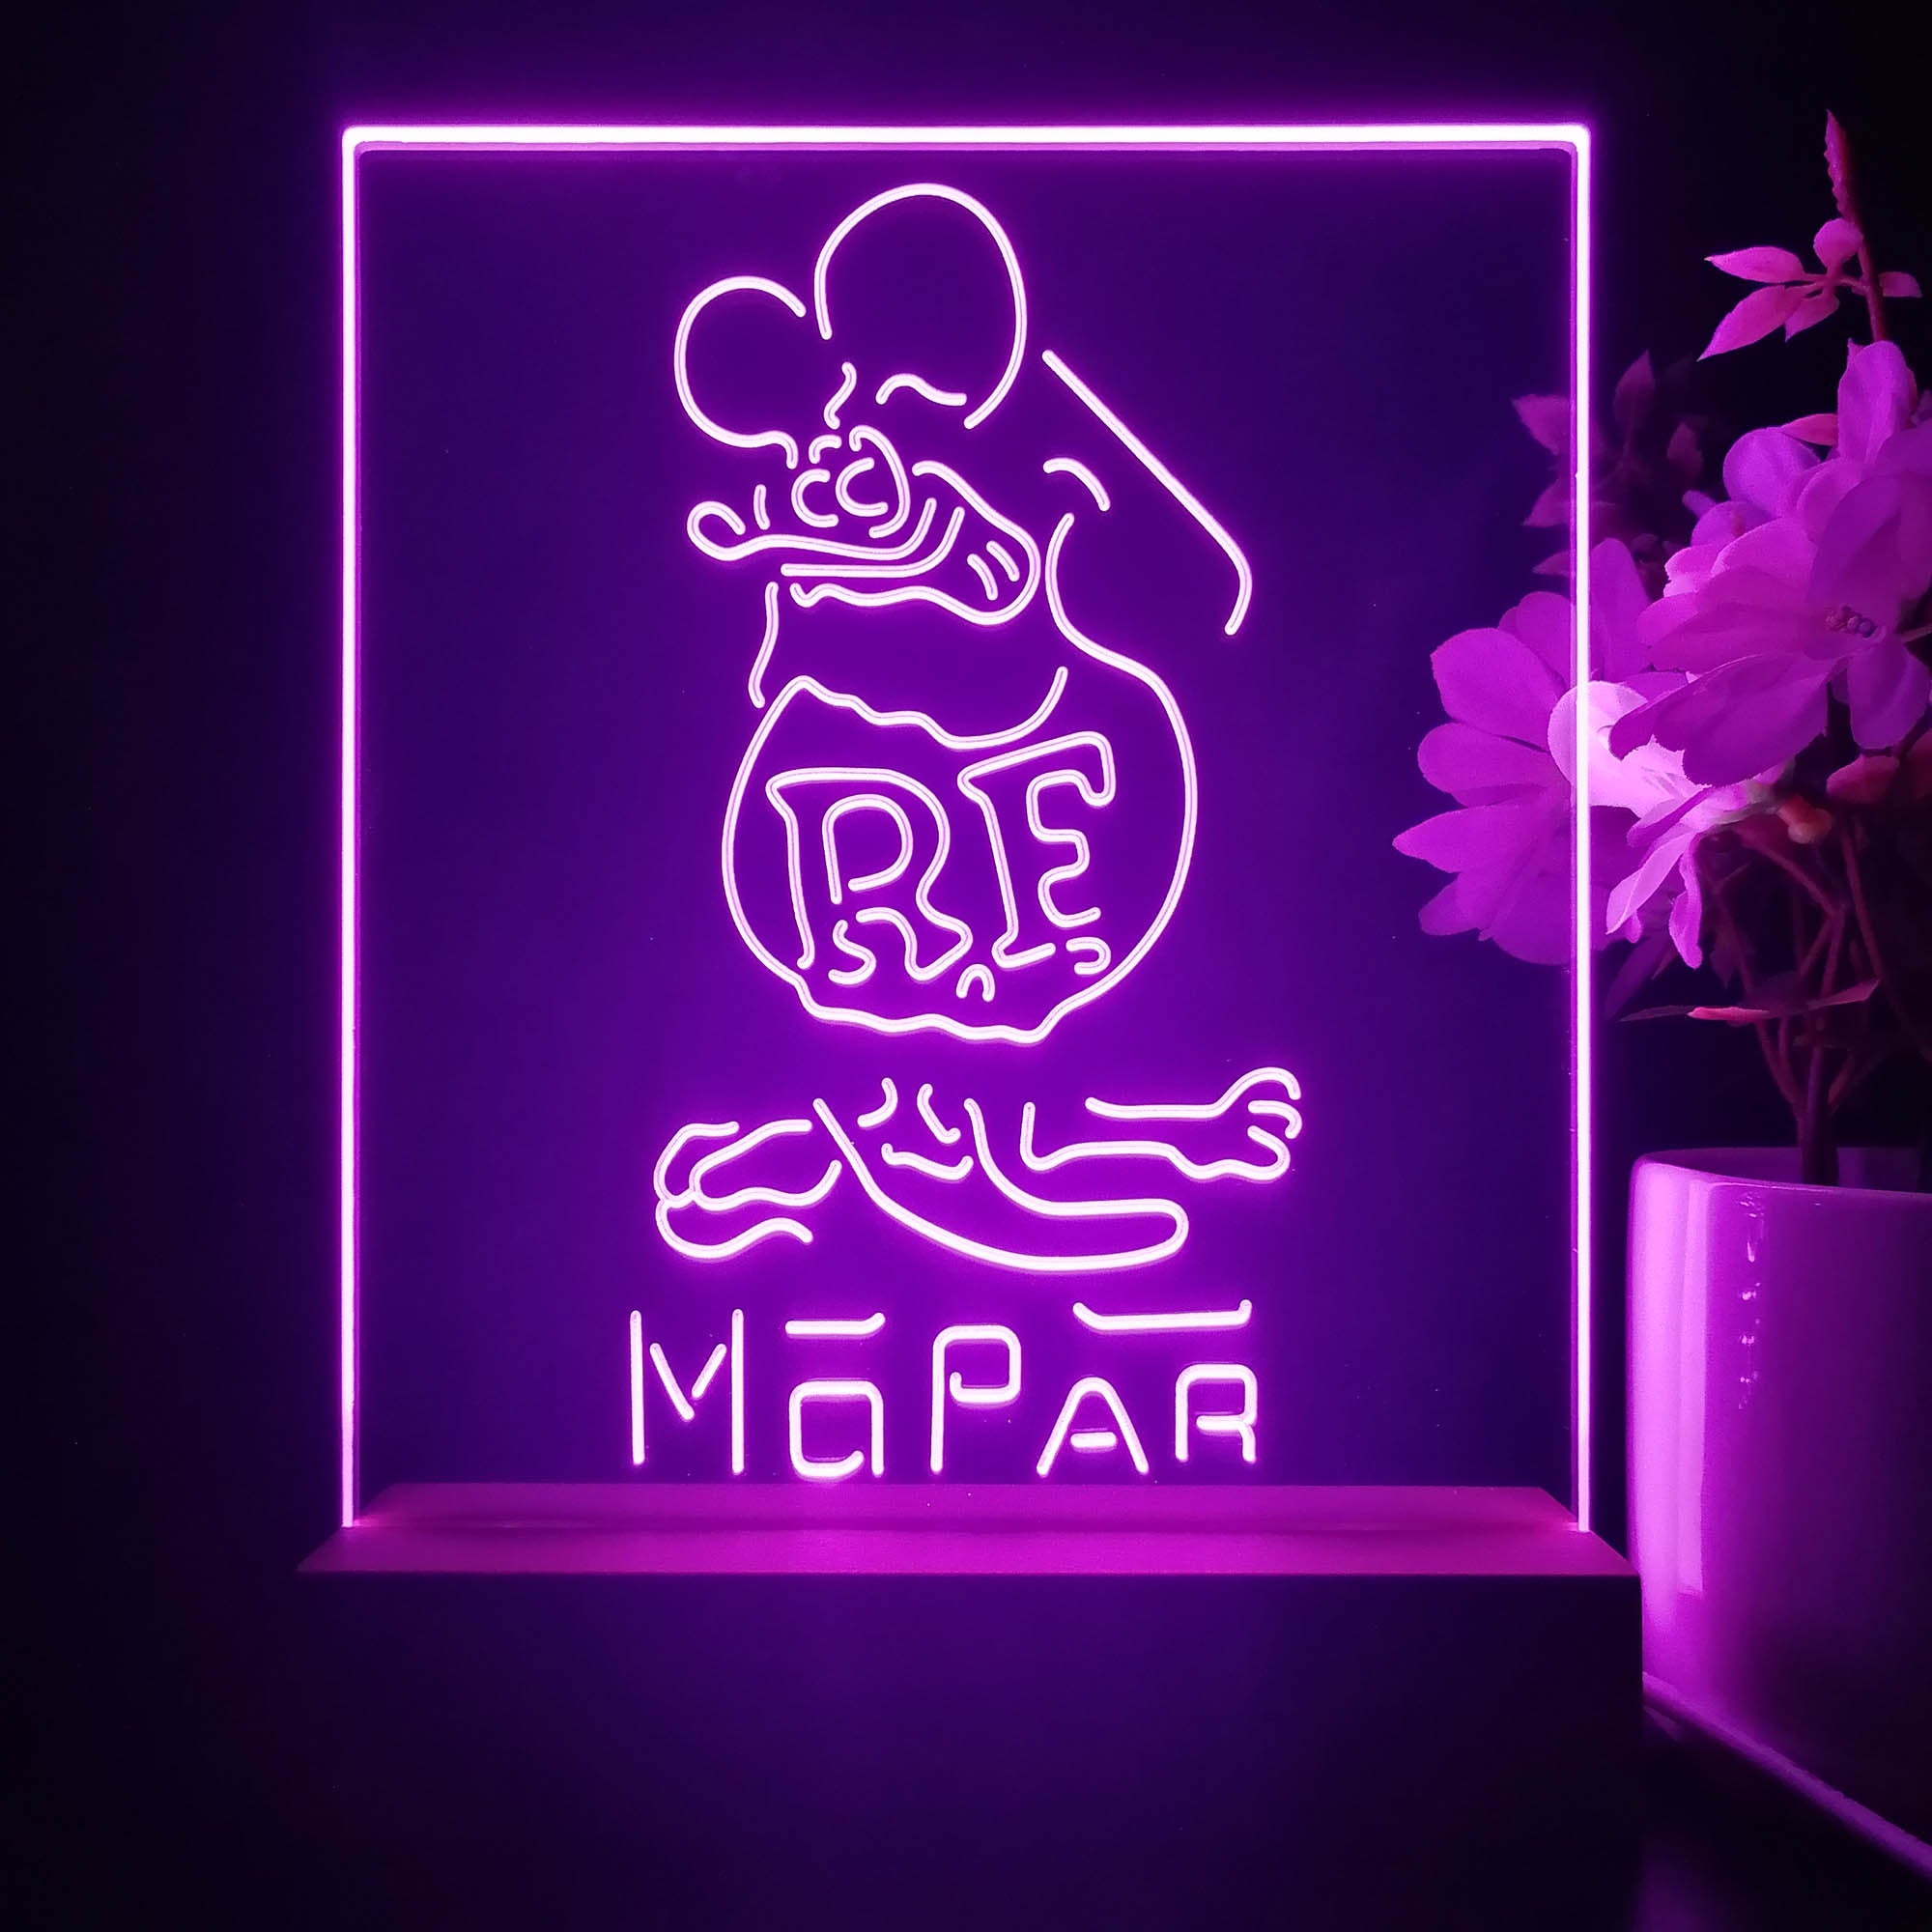 Rat Fink Retro RF Mopar 3D Illusion Night Light Desk Lamp